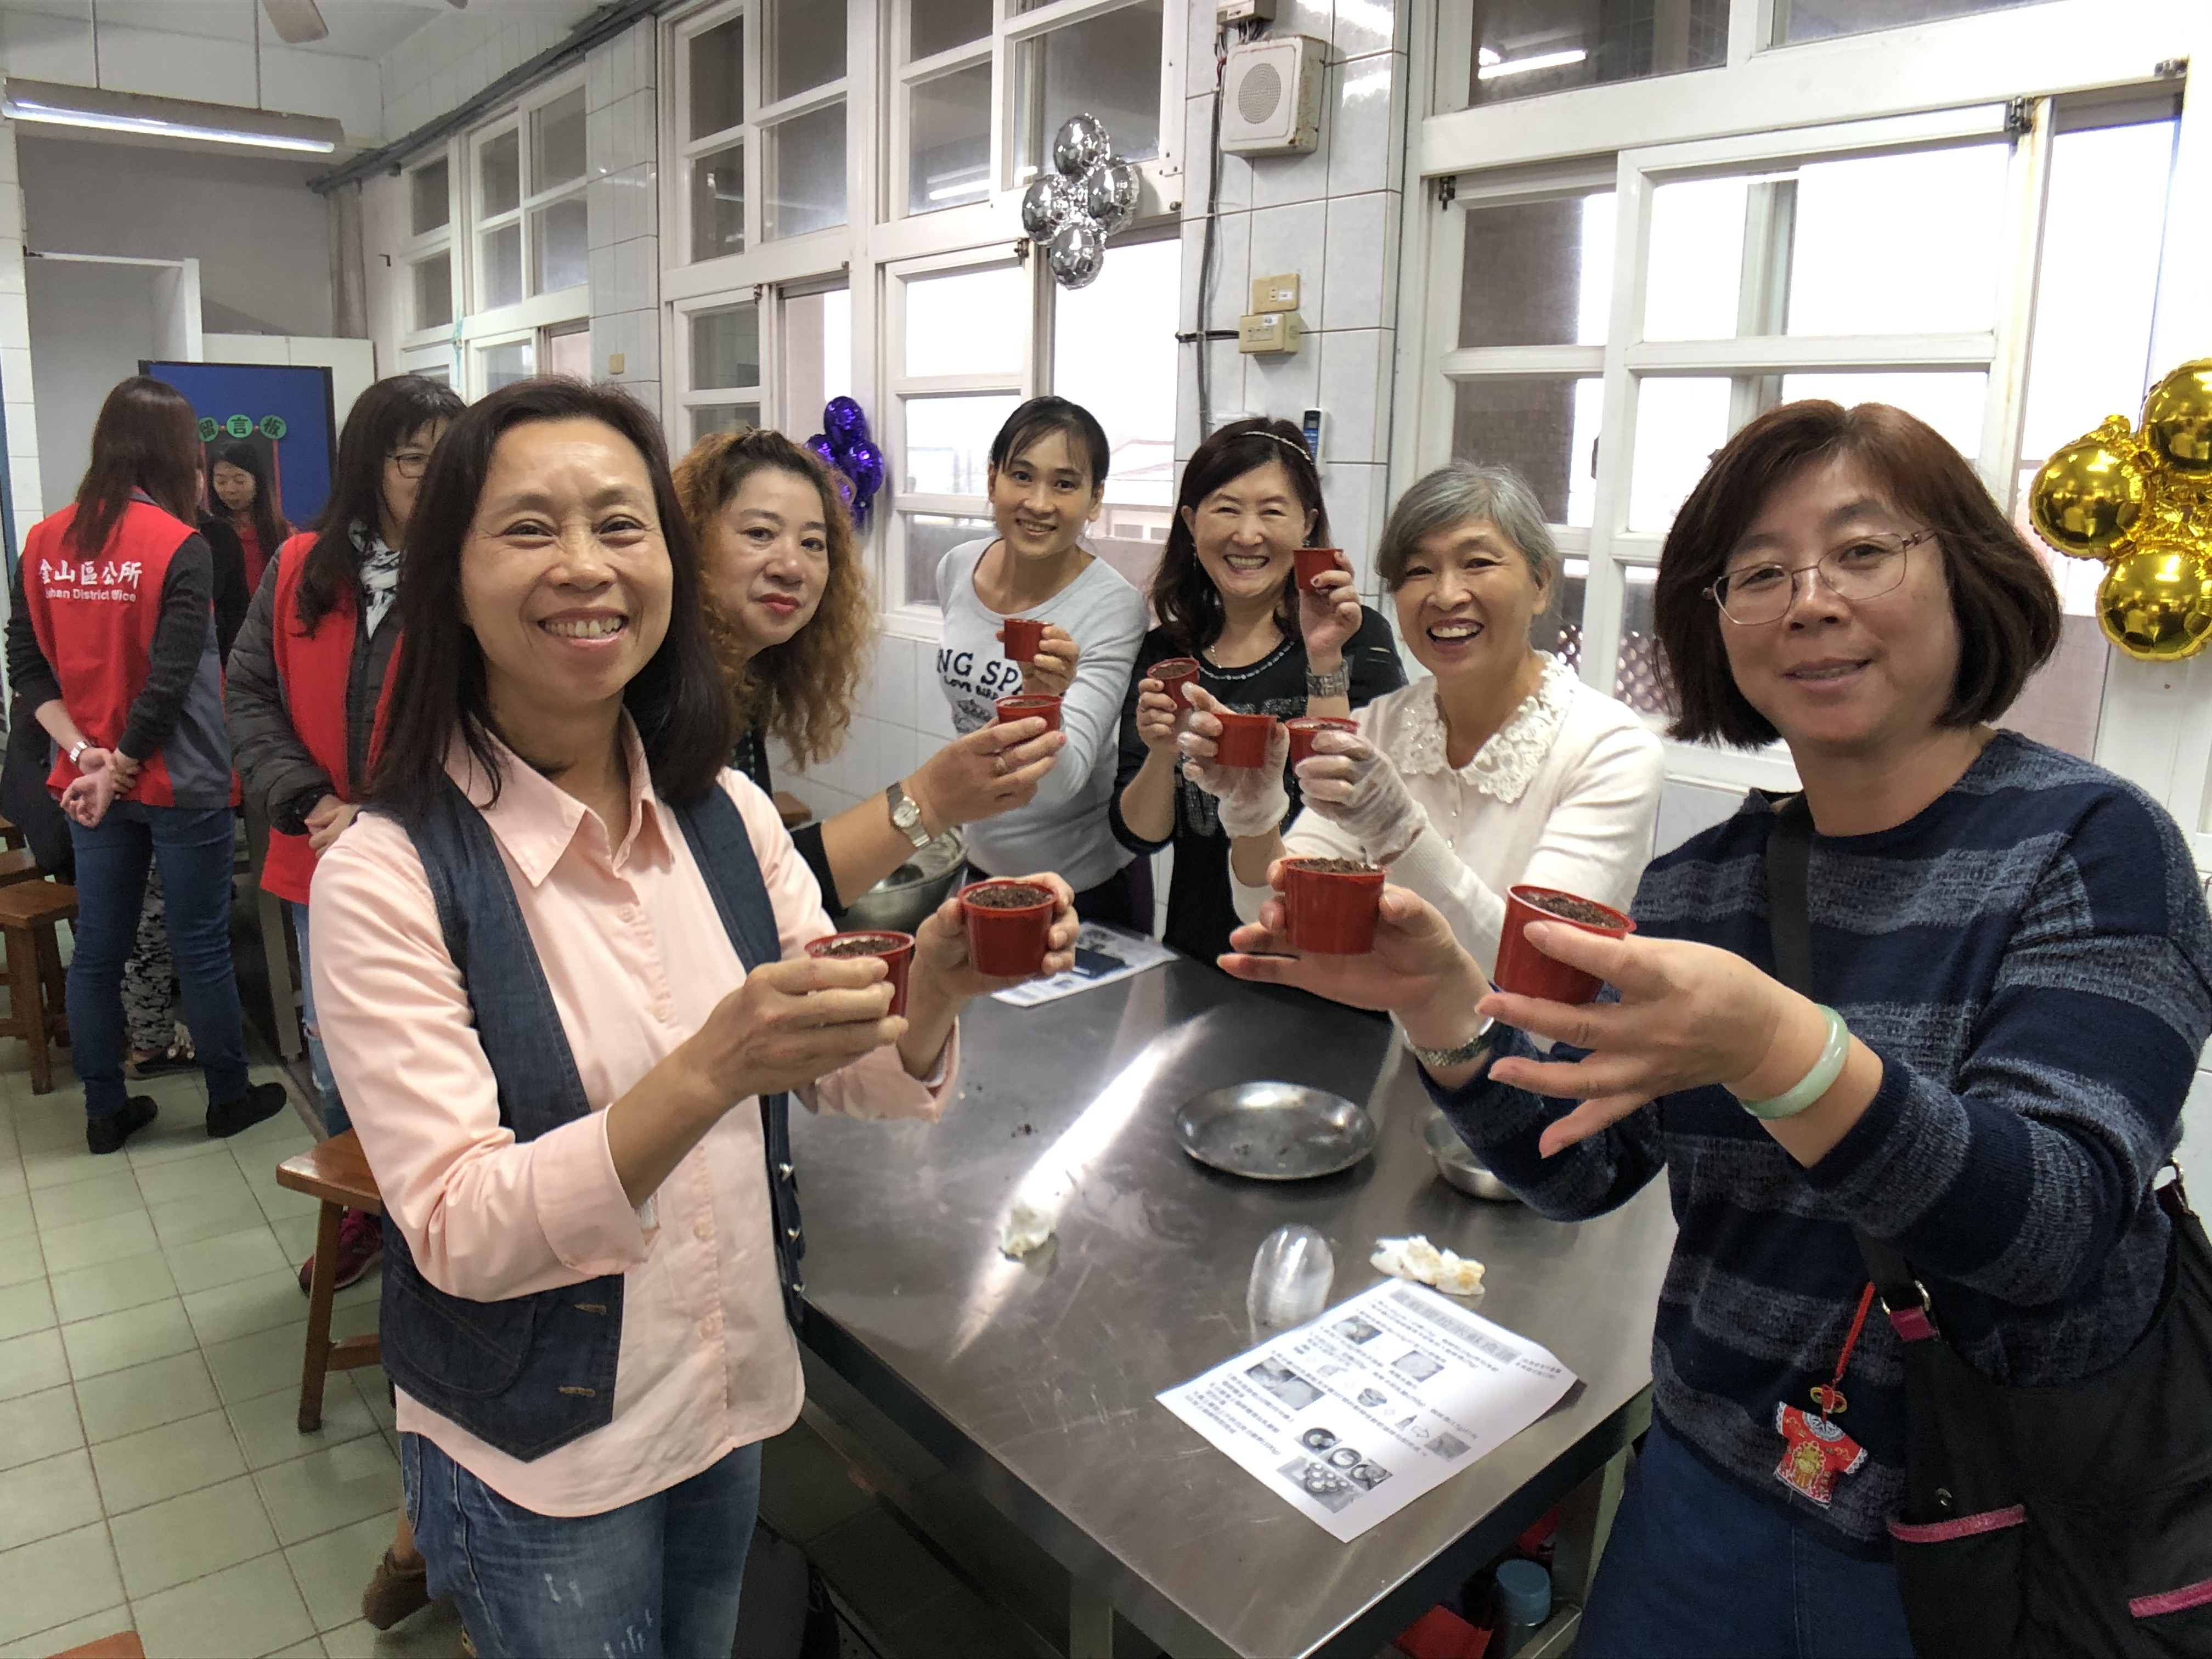 เขตจินซานเปิดคอร์สสอนทำขนมหวาน ครอบครัวผู้ตั้งถิ่นฐานใหม่ร่วมกิจกรรมอย่างมีความสุข (ภาพจาก รัฐบาลนครนิวไทเป)